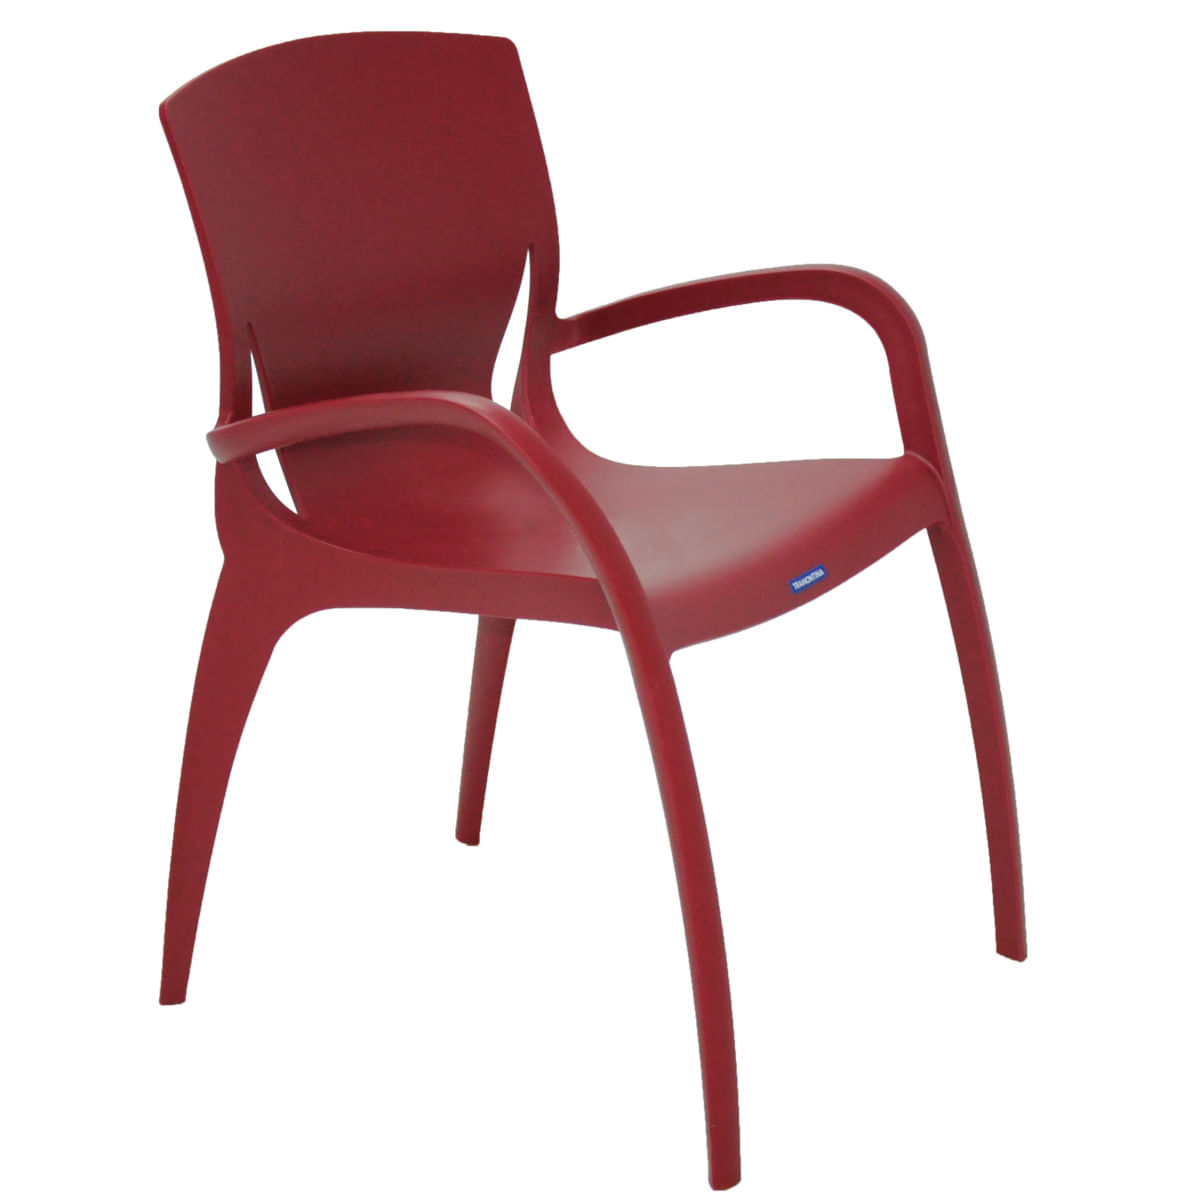 Cadeira Tramontina Clarice em Polipropileno e Fibra de Vidro Marsala